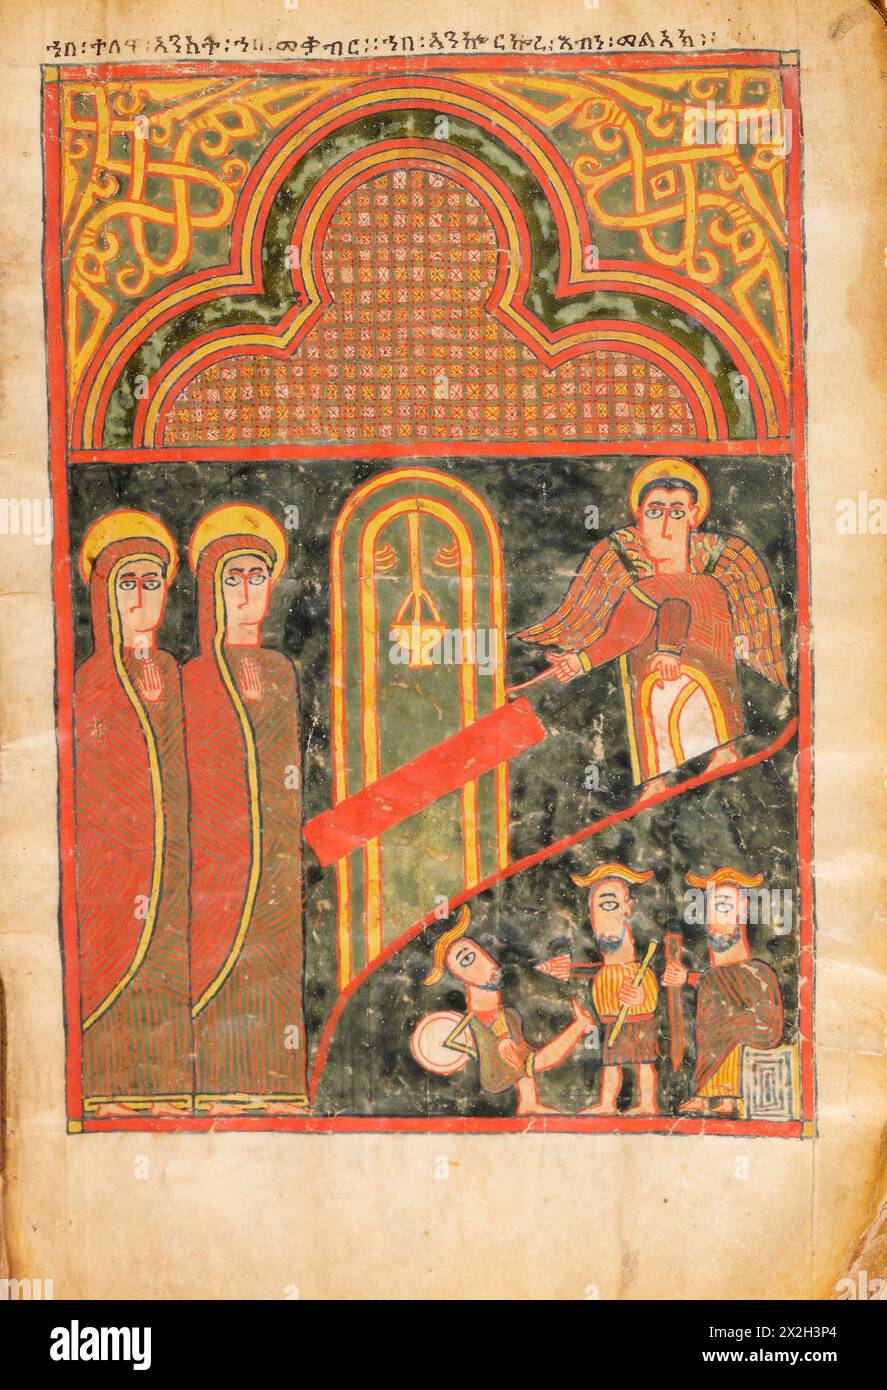 Evangile illuminé - peuples Amhara -les saintes femmes au tombeau - fin du XIVe au début du XVe siècle Banque D'Images